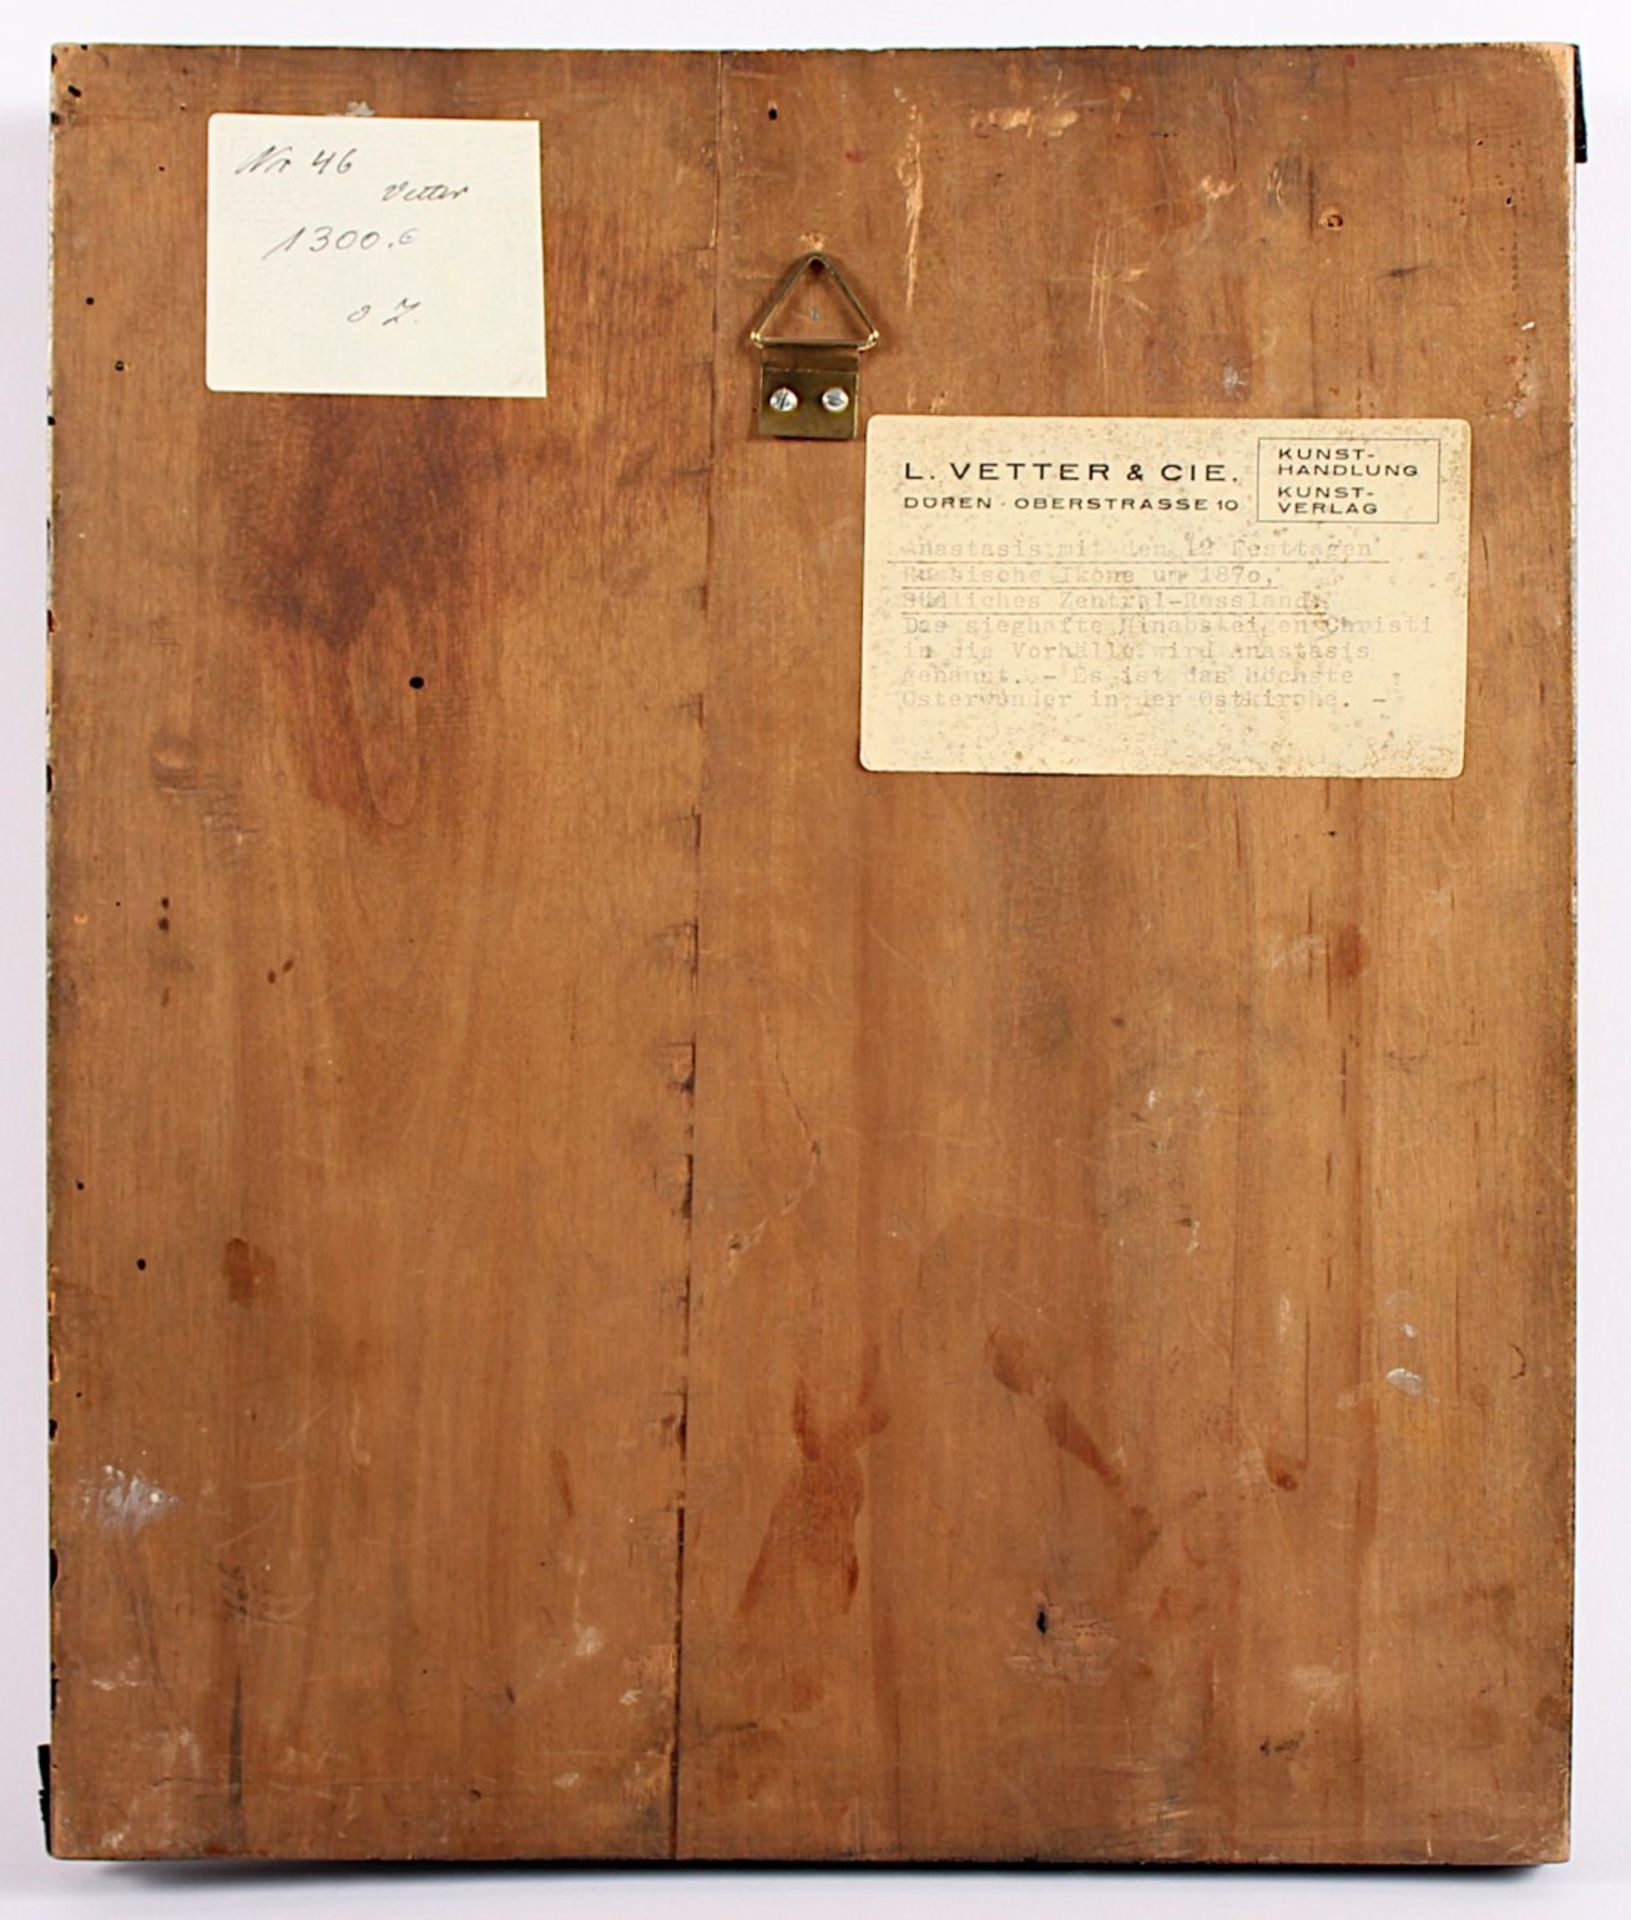 FESTIKONE, Anastasis und Auferstehung, Tempera/Holz, Goldgrund, 31 x 26, RUSSLAND, um 1870- - -22.00 - Bild 2 aus 2